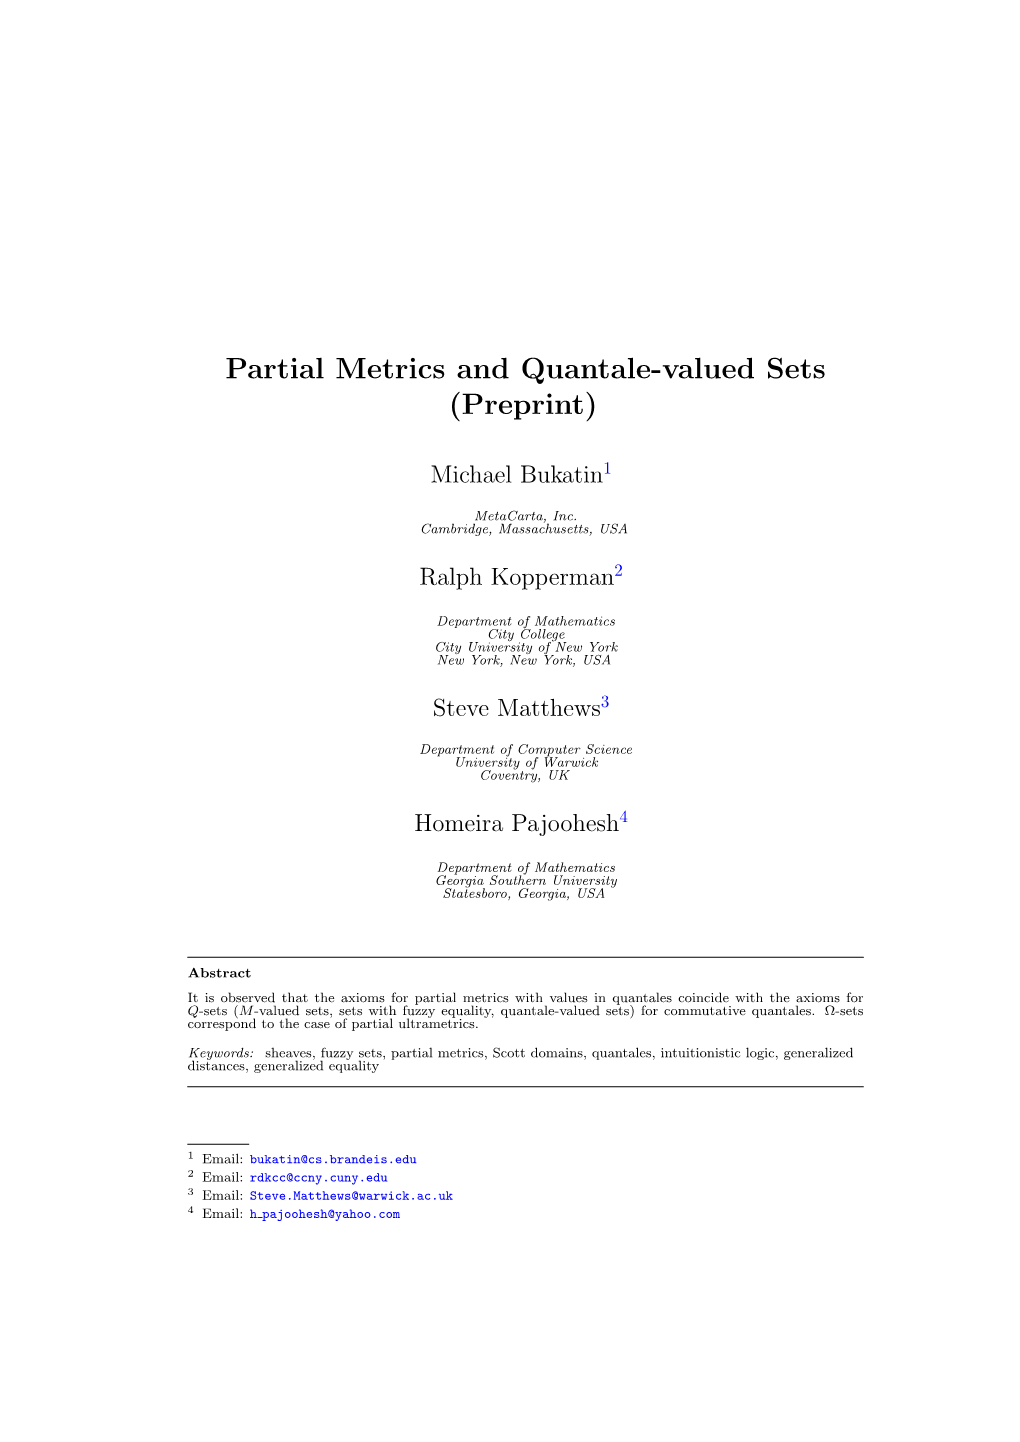 Partial Metrics and Quantale-Valued Sets (Preprint)